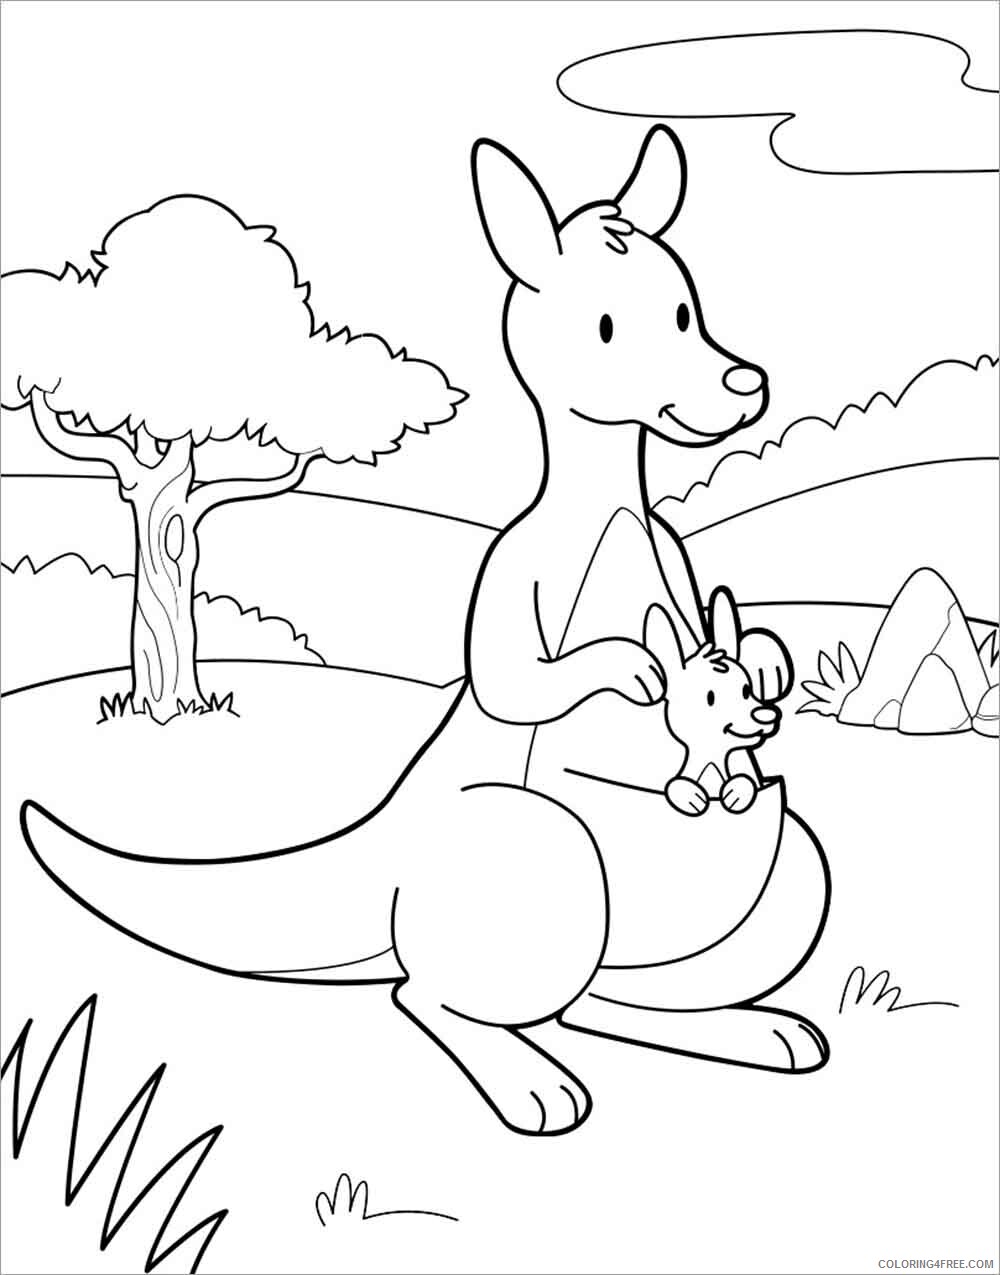 Kangaroo Coloring Pages Animal Printable Sheets Moms And Baby 21 2958 Coloring4free Coloring4free Com